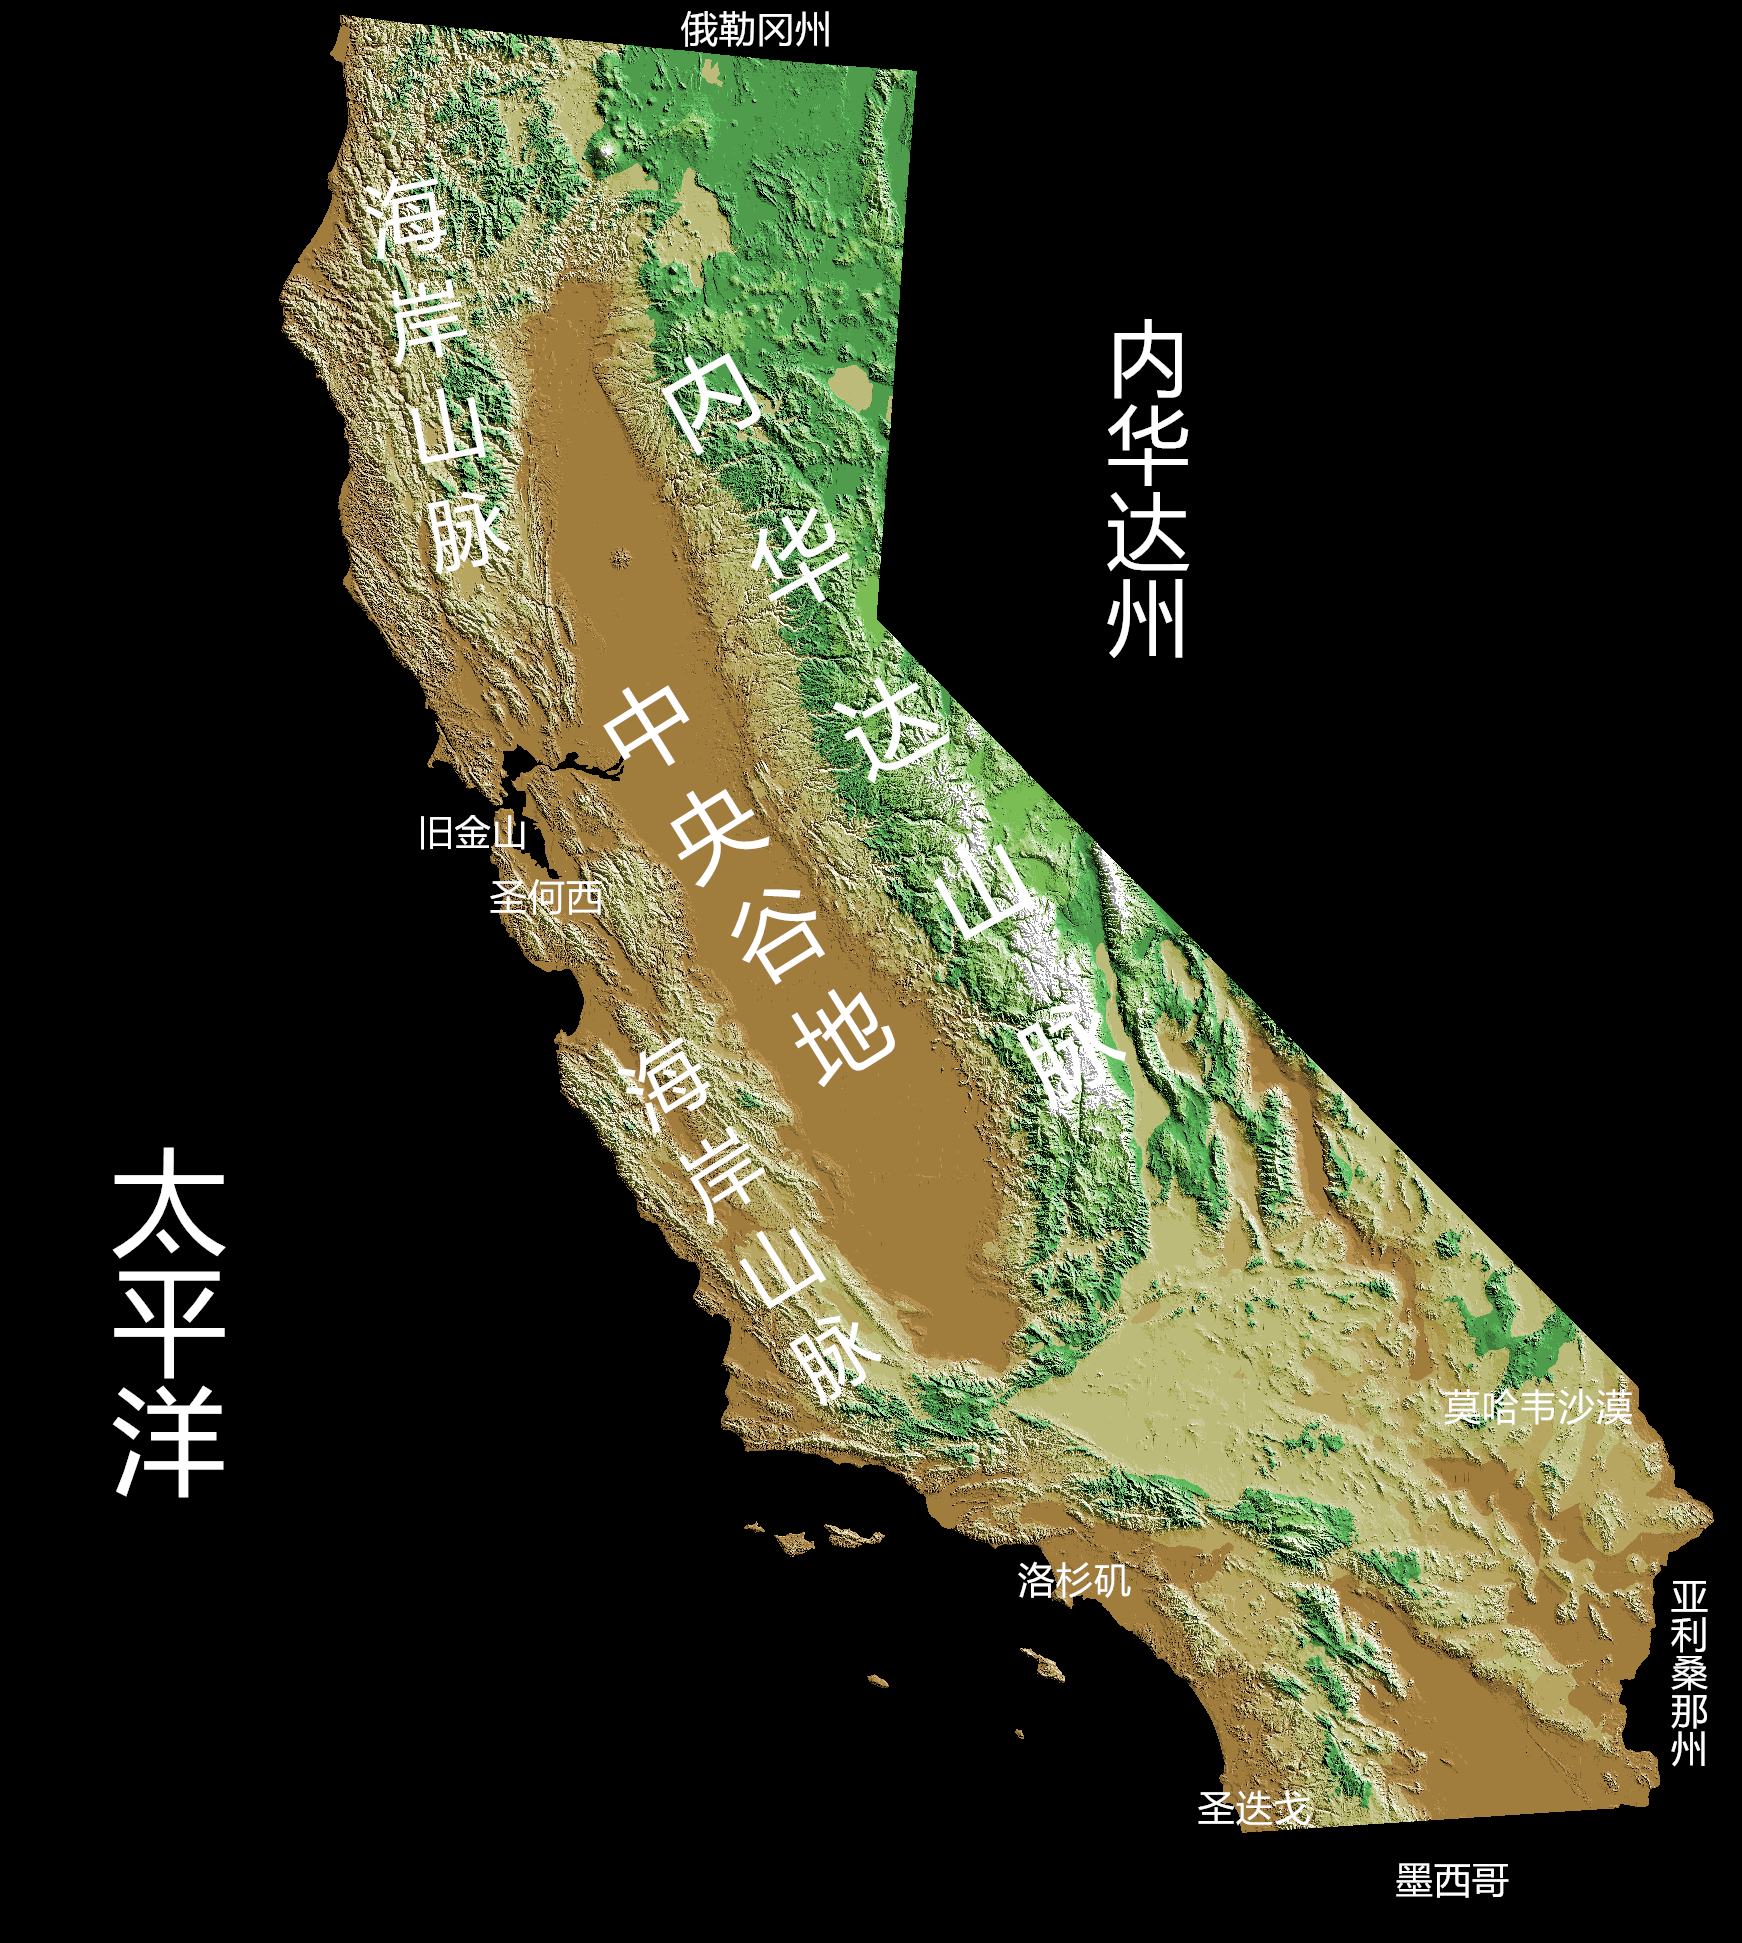 net,星球研究所标注)这样的地形与群山环绕一个盆地的中国四川颇为